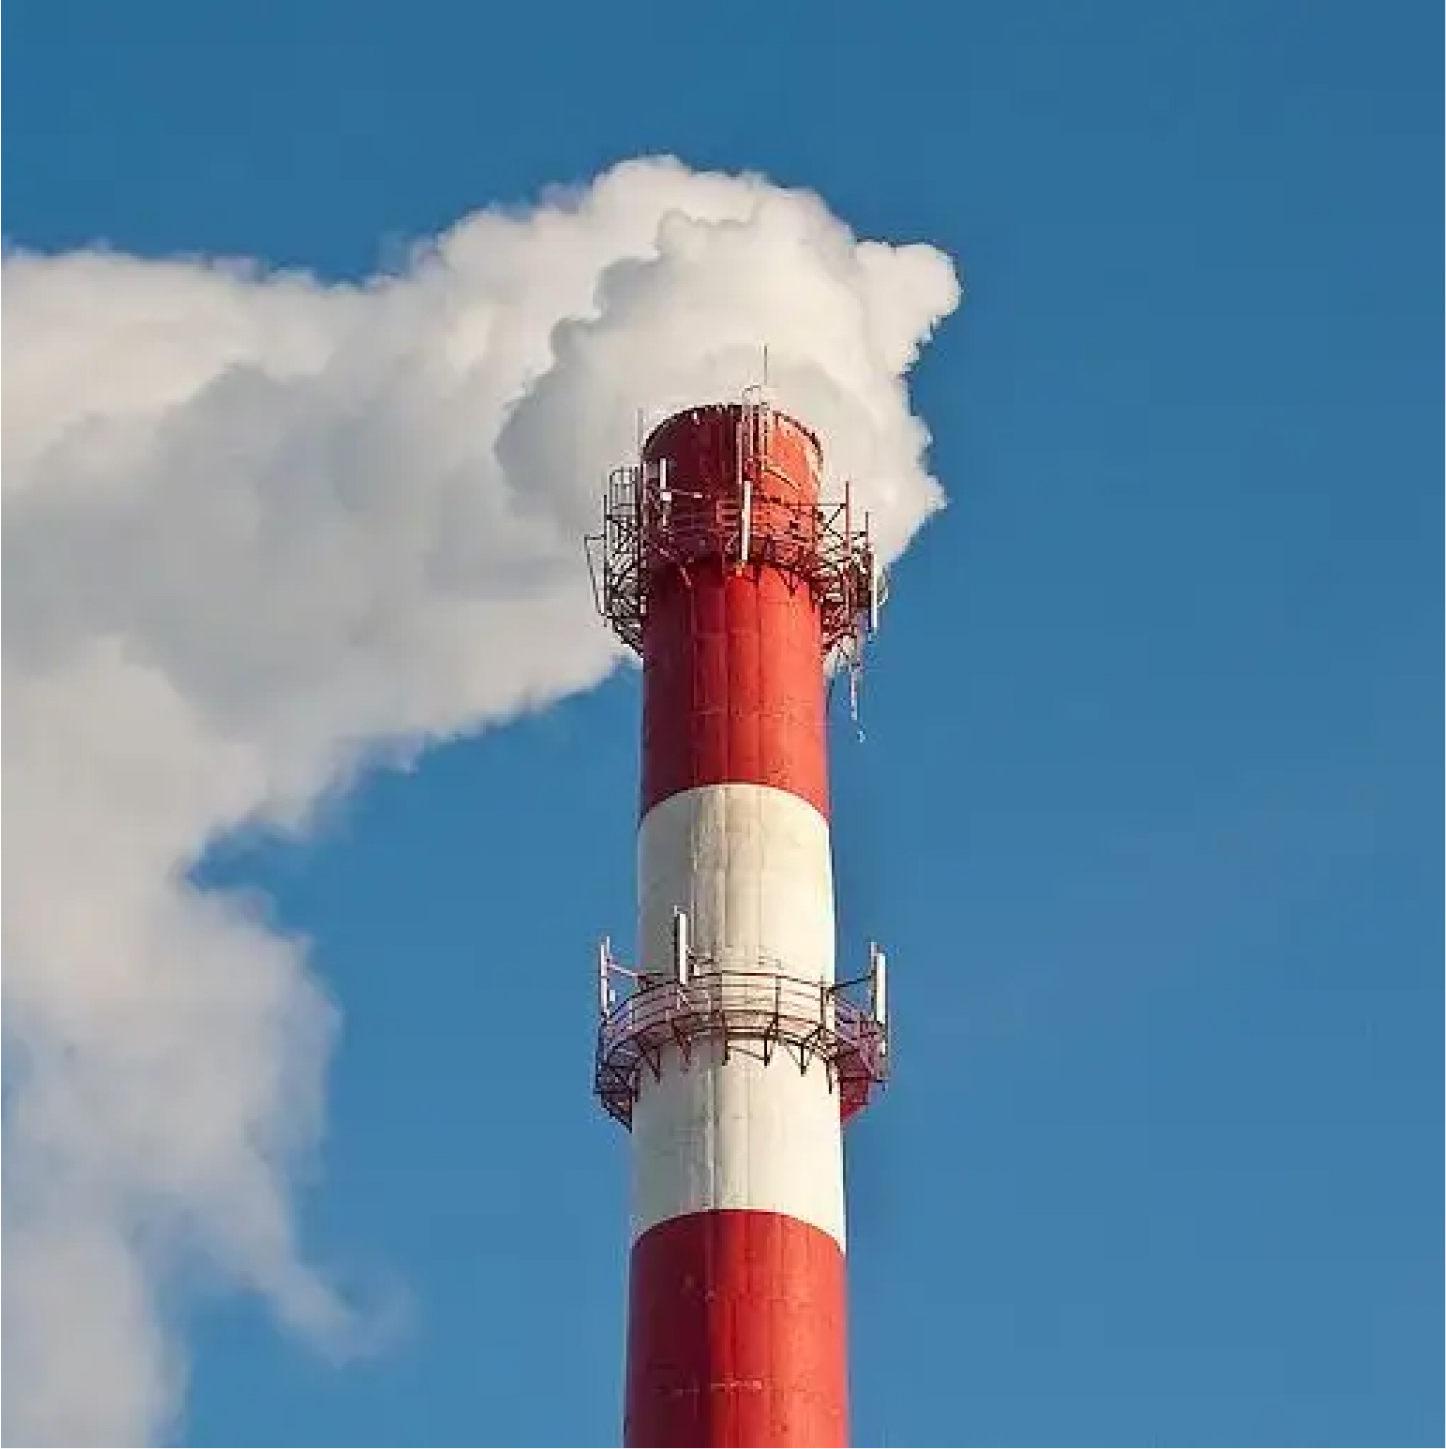 дымовая труба служит для выброса дымовых газов в атмосферу и создания тяги